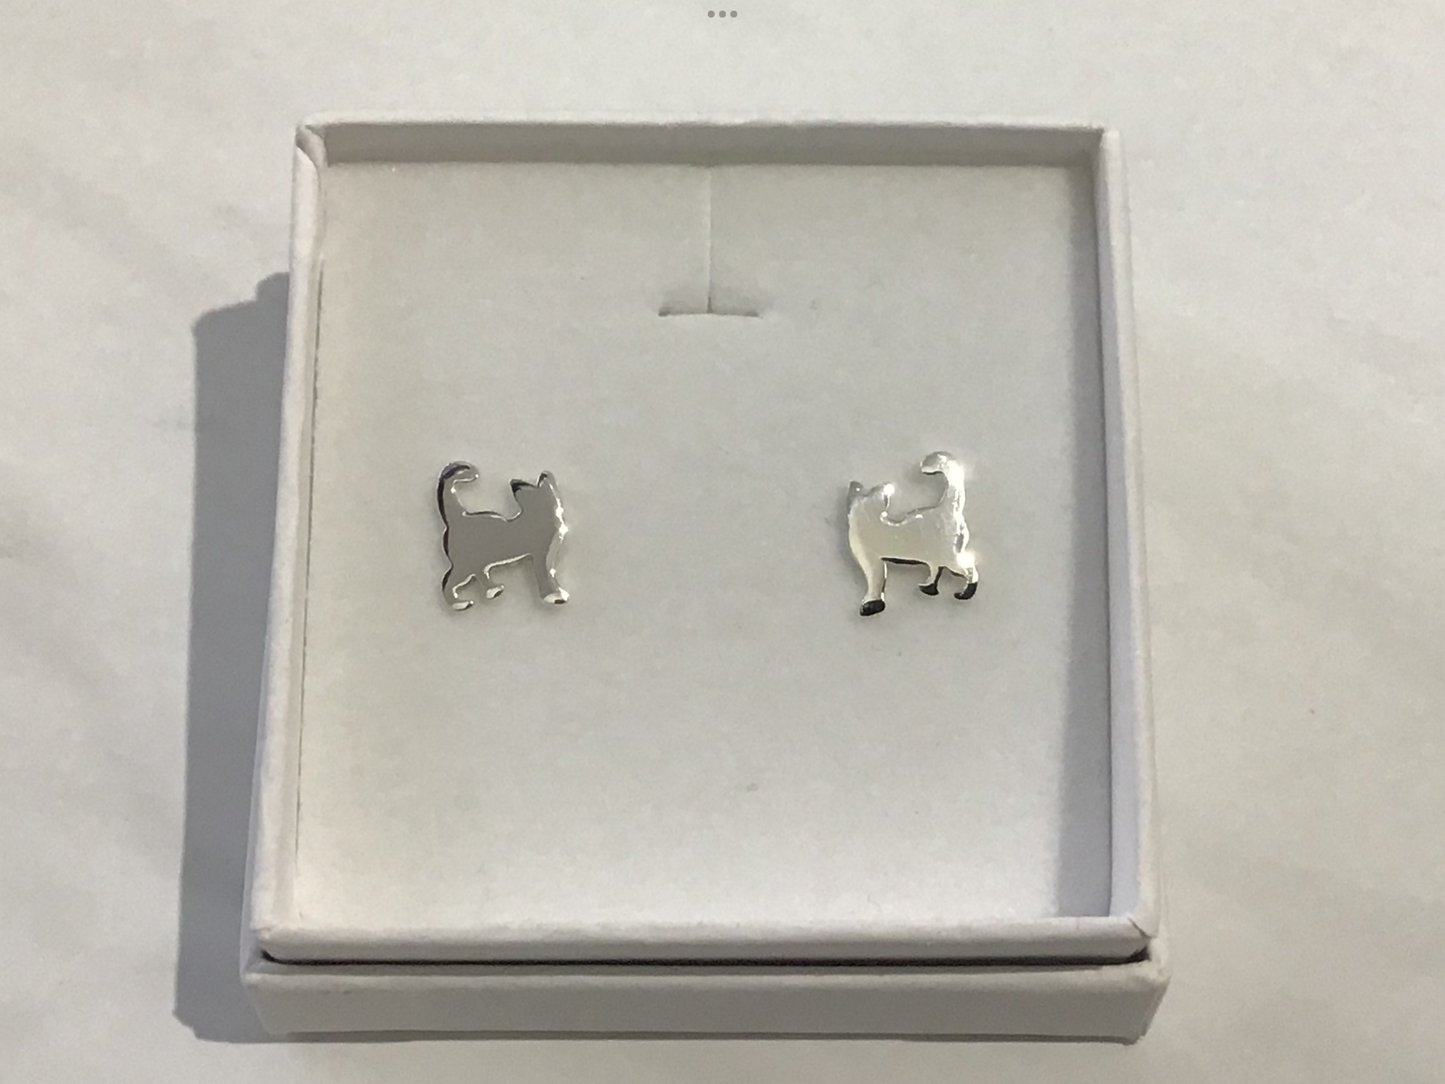 925 Sterling Silver Cat Stud Earrings